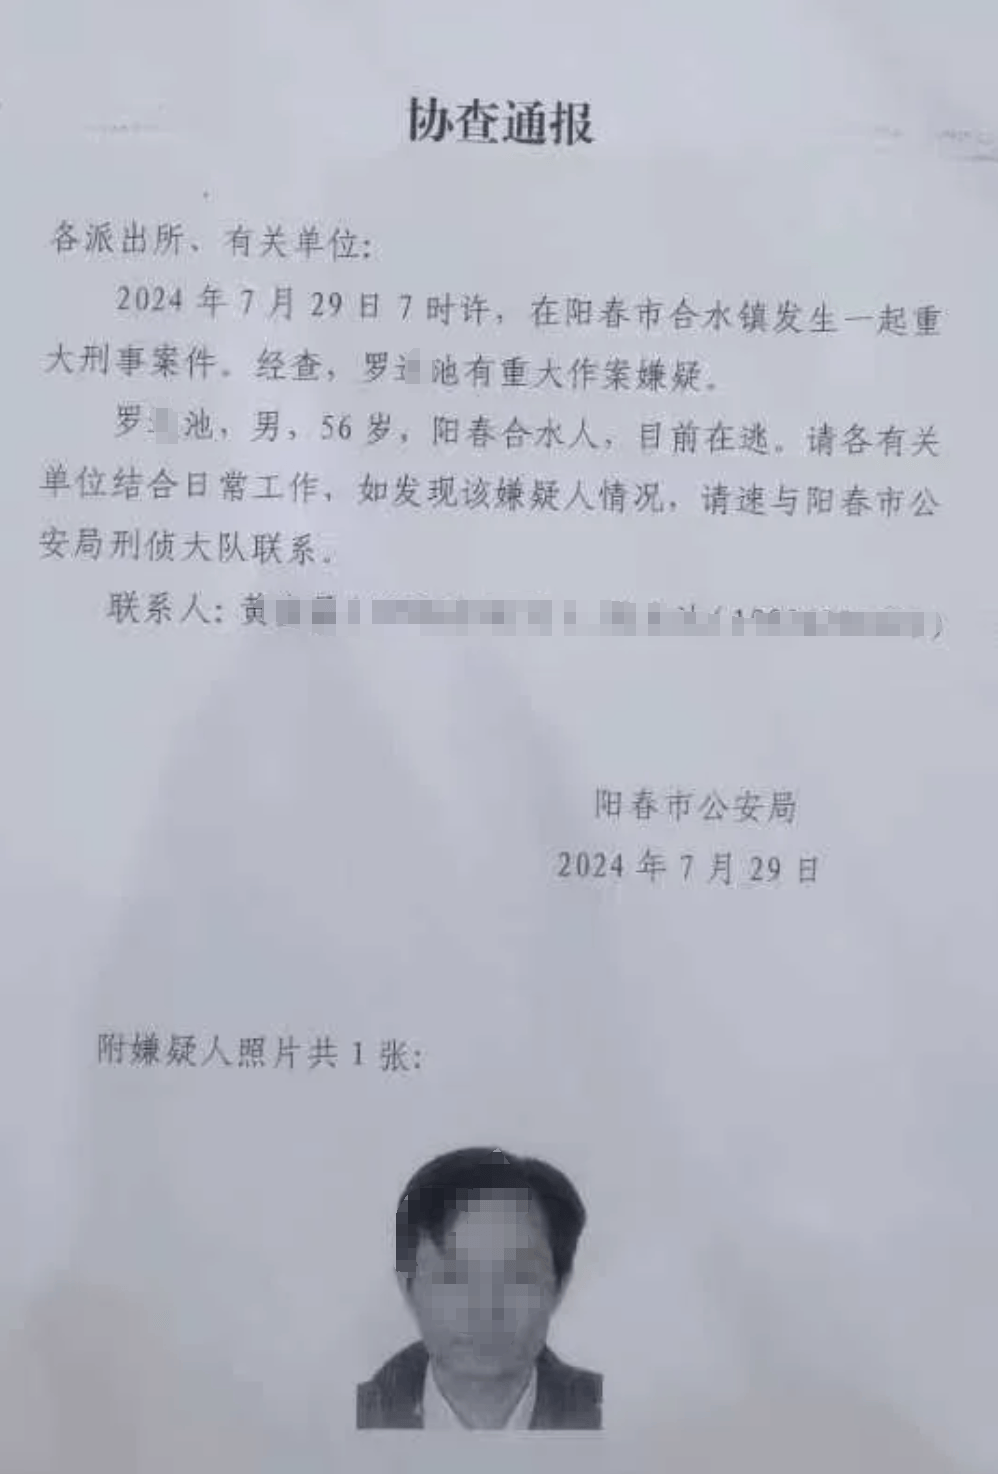 广东阳春通报爷孙三人遭邻居冲撞刑事案件:致2死1伤,邻里土地纠纷